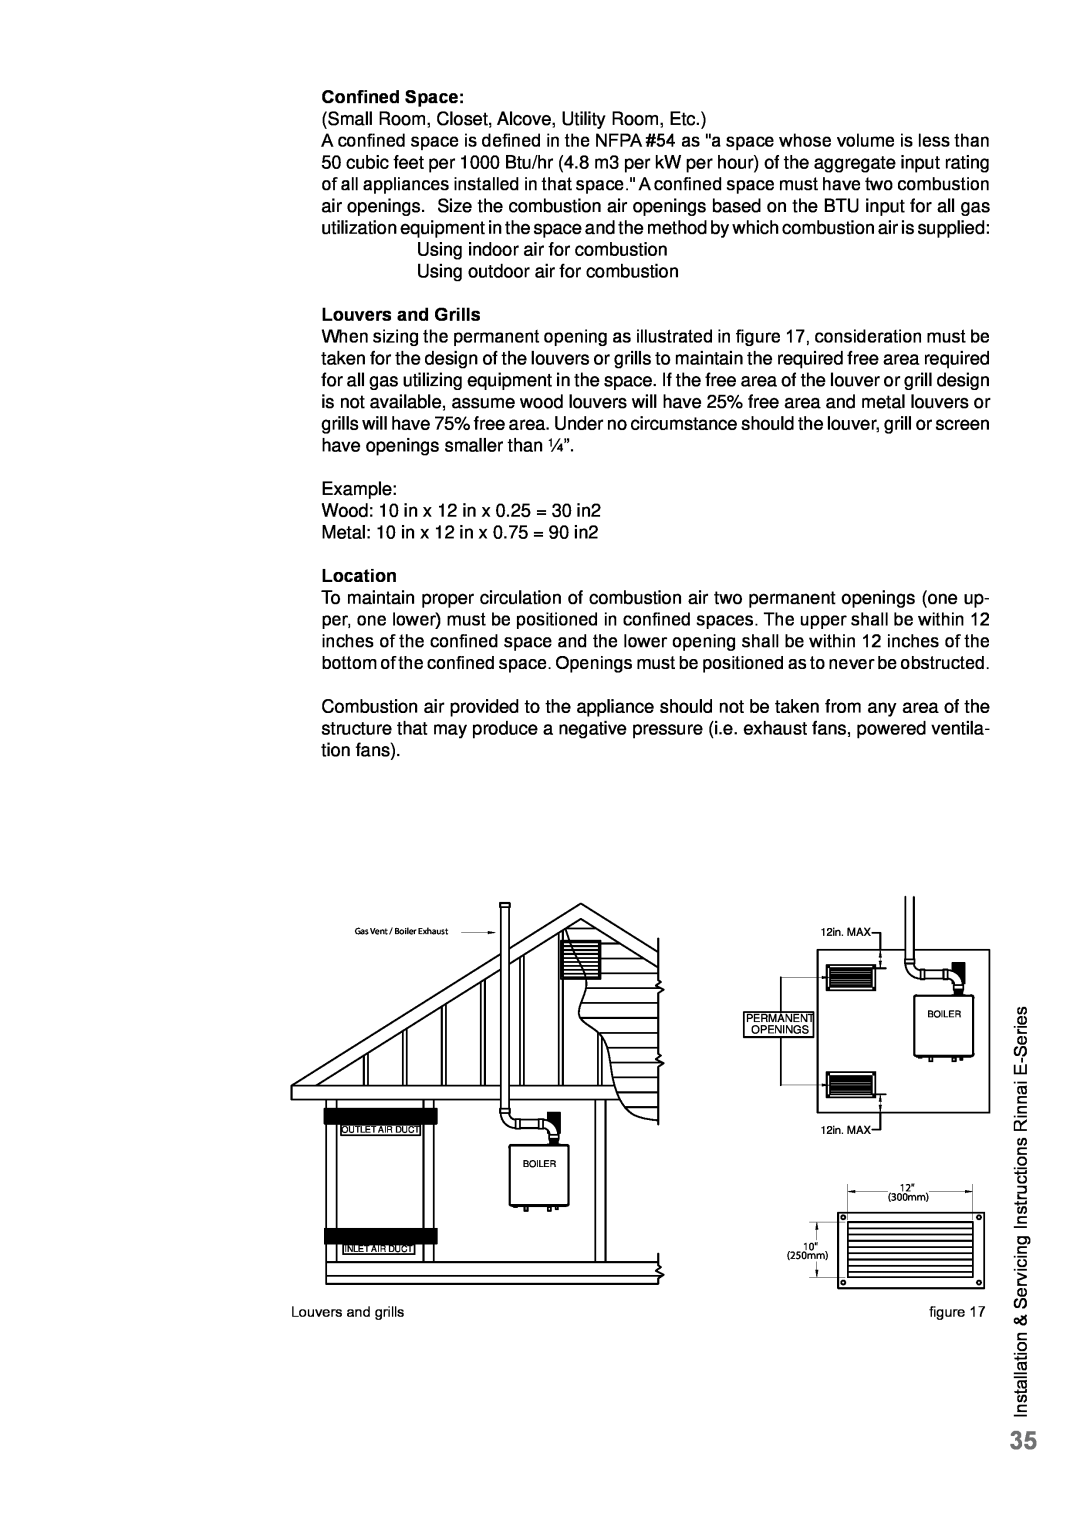 Rinnai E75CP, E110CP, E75CN, E110CN user manual Confined Space, Louvers and Grills, Location 